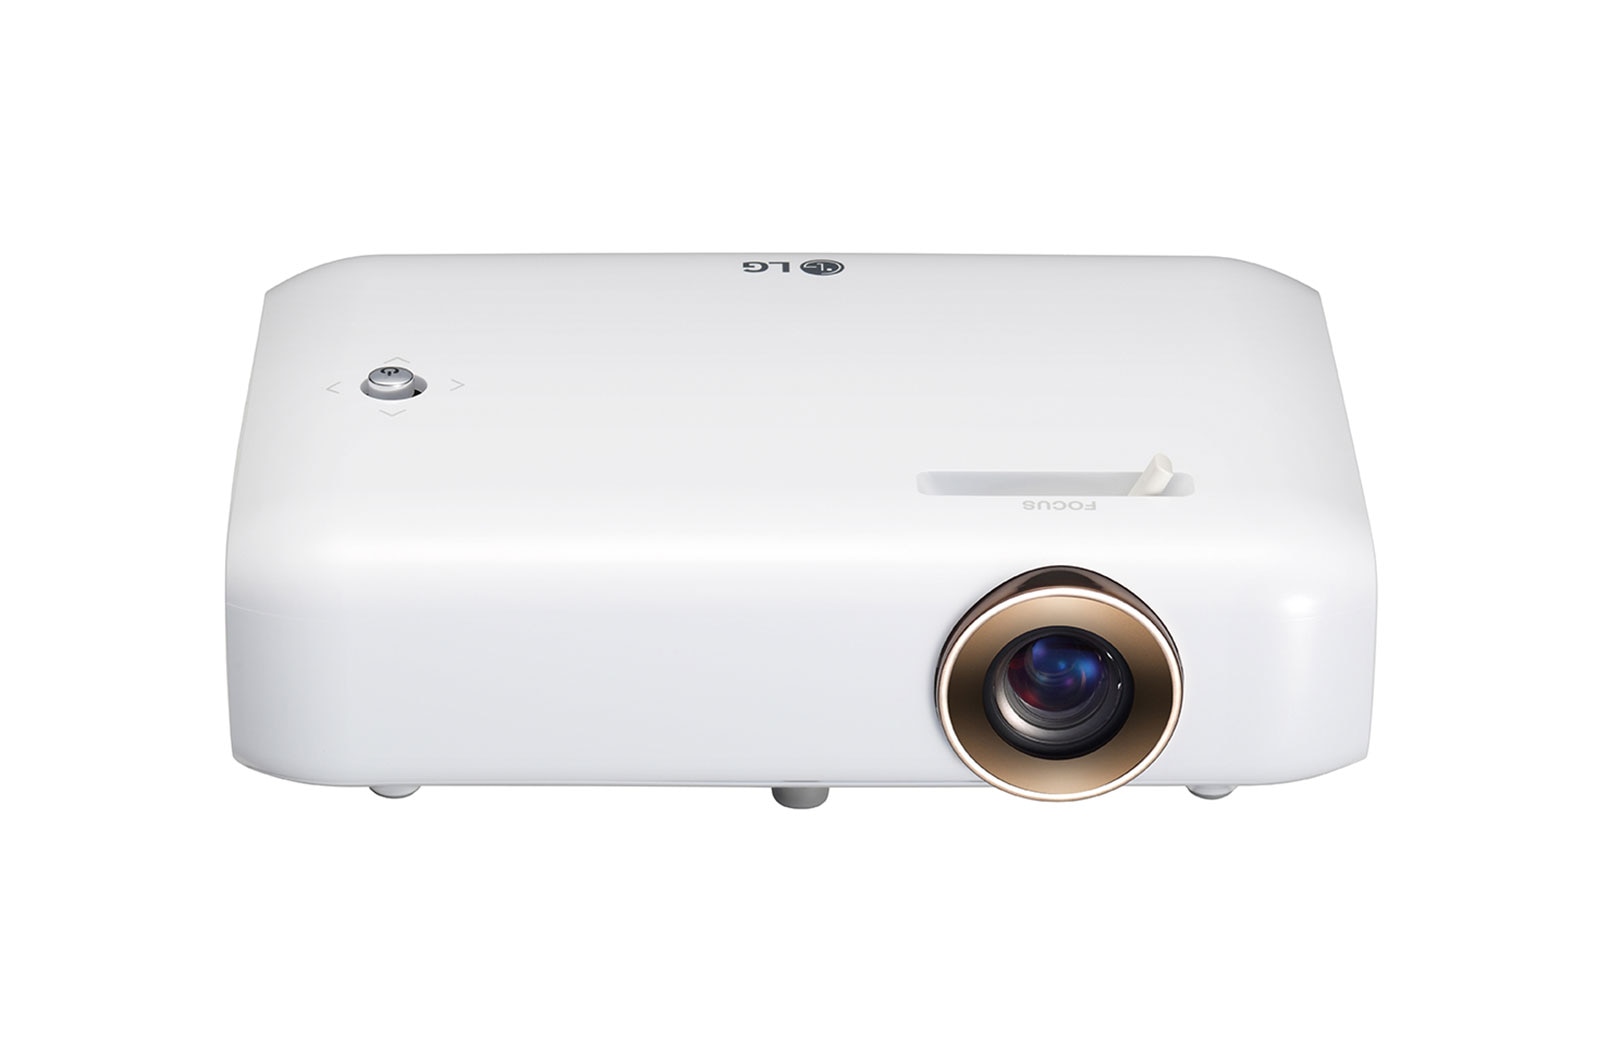 LG Vidéoprojecteur LED DLP | 550 Lumens | Résolution HD : 1280x720 | 100,000:1, LG PH510PG